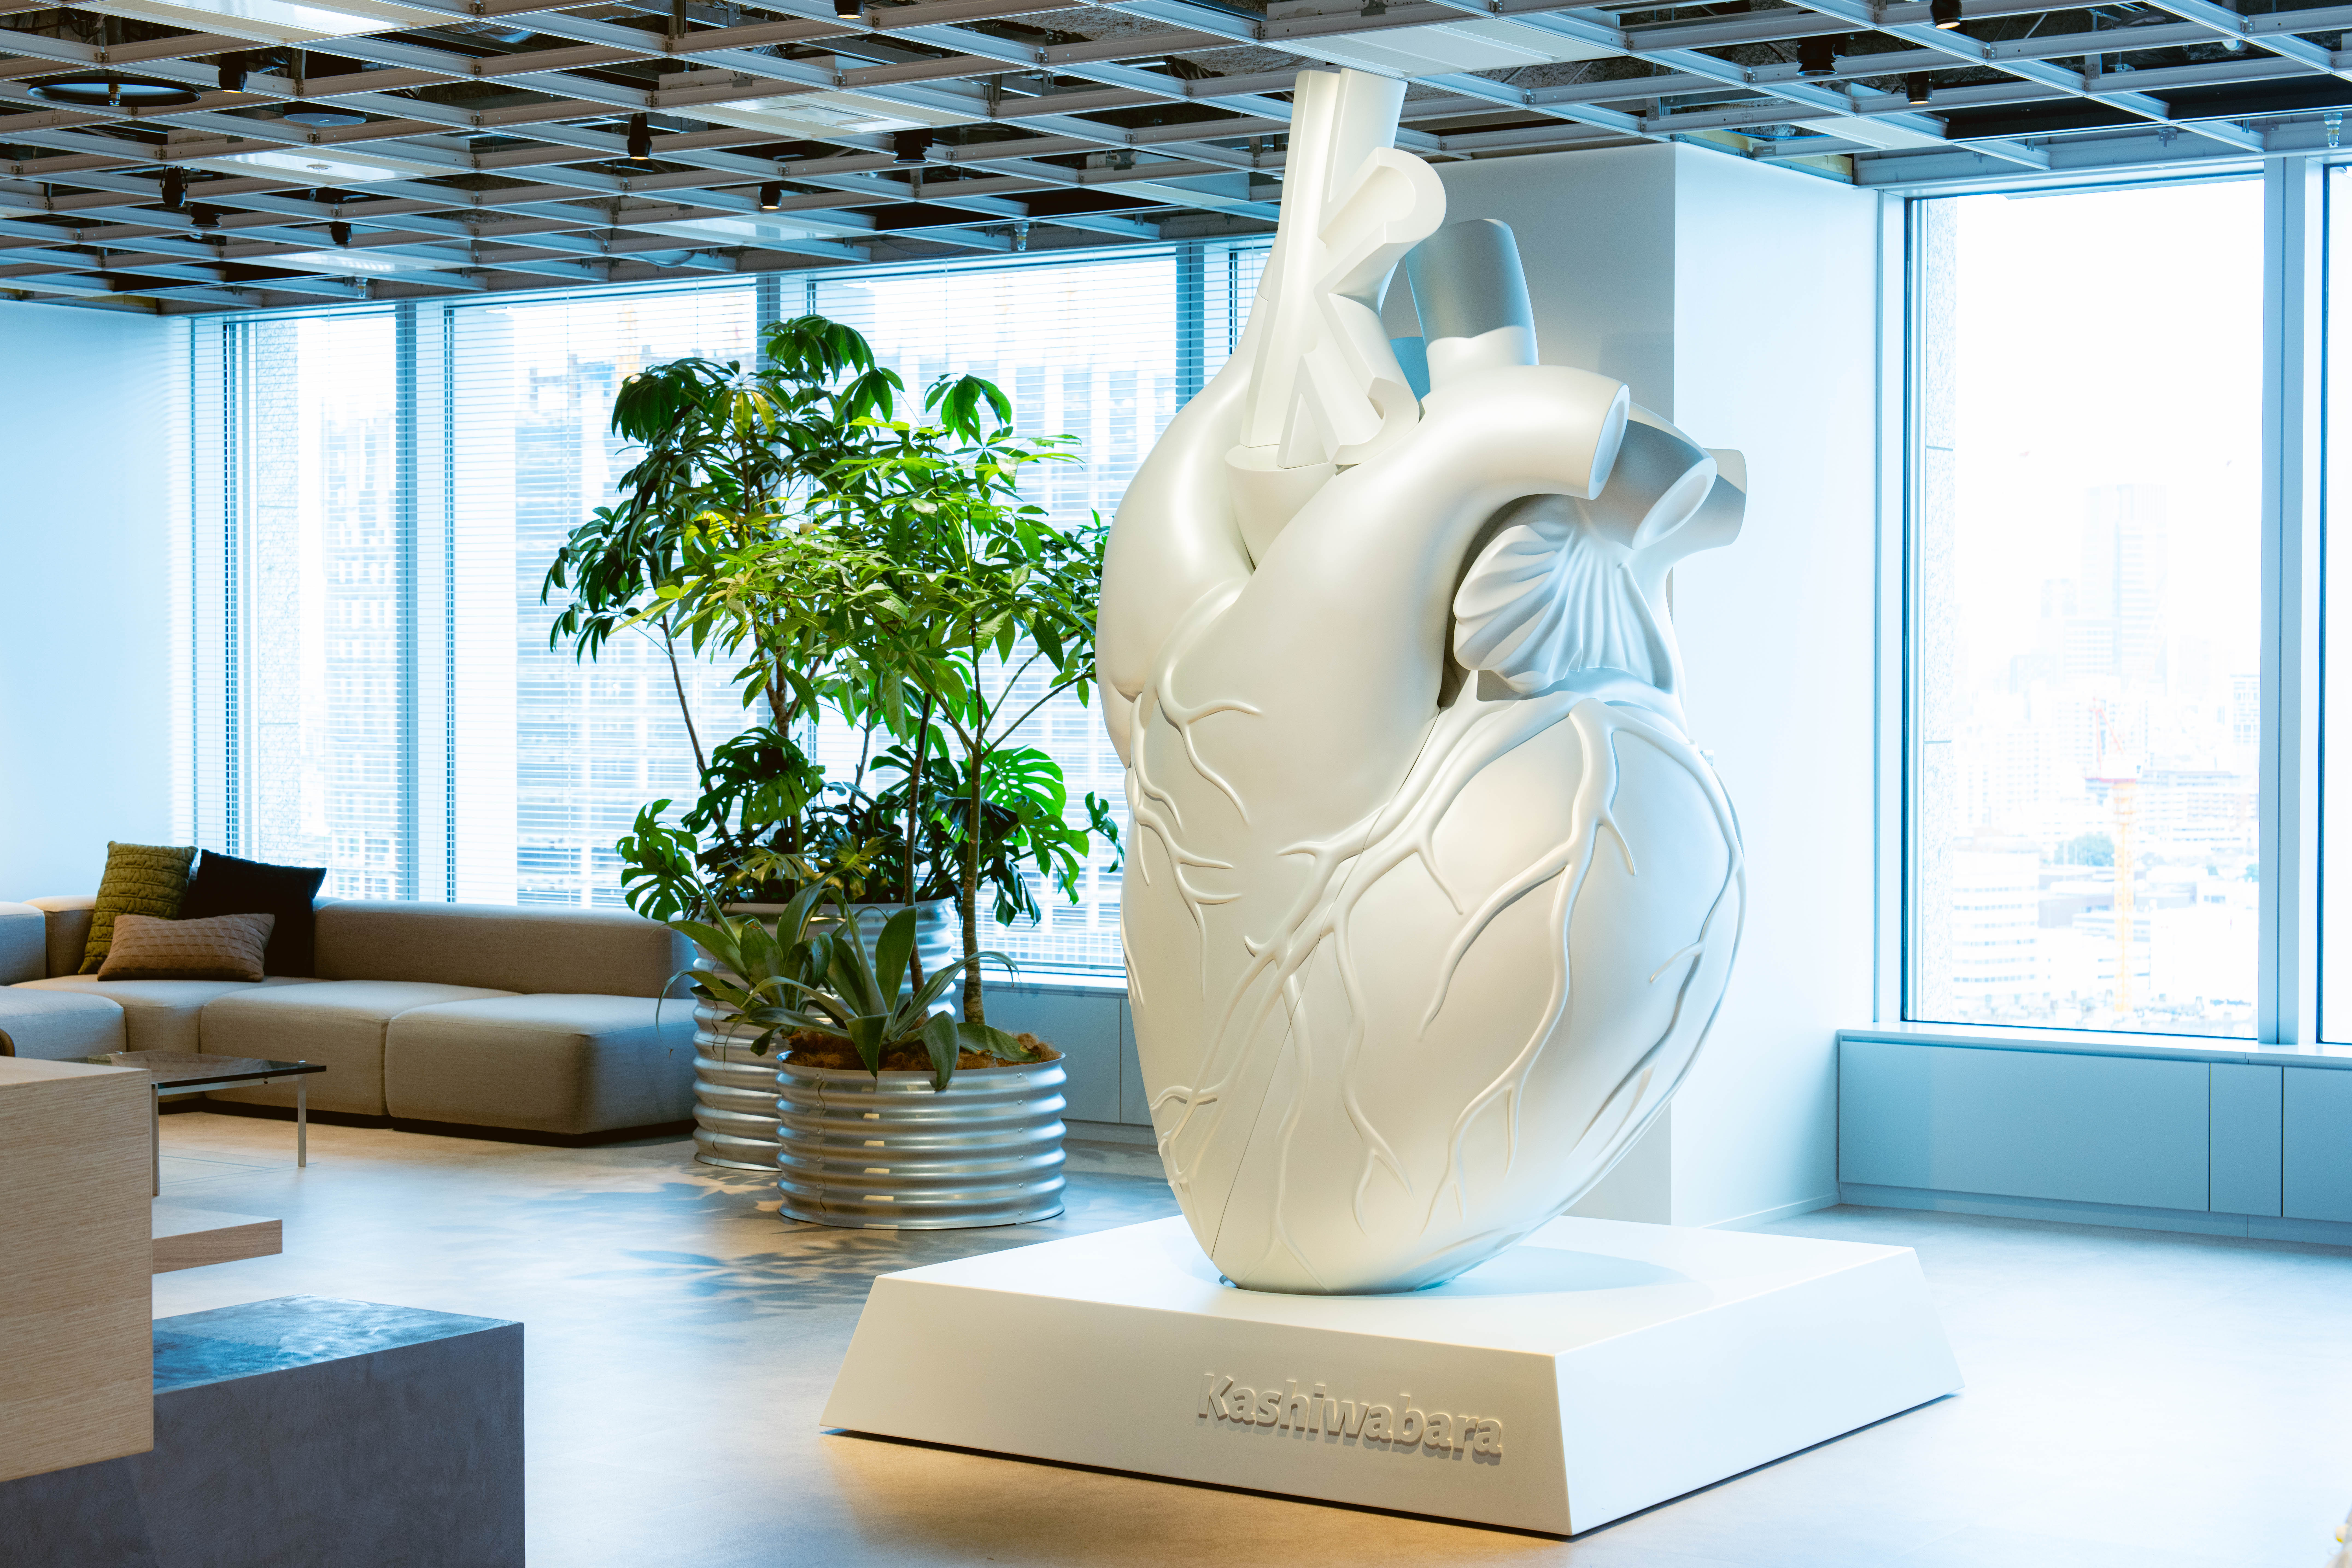 弊社入り口にあると必ず視界に入る、巨大な心臓の形をしたオブジェ。造形アーティストがこのオフィスの為に特別に製作したもので、社会を循環させるエネルギーの源を表現しています